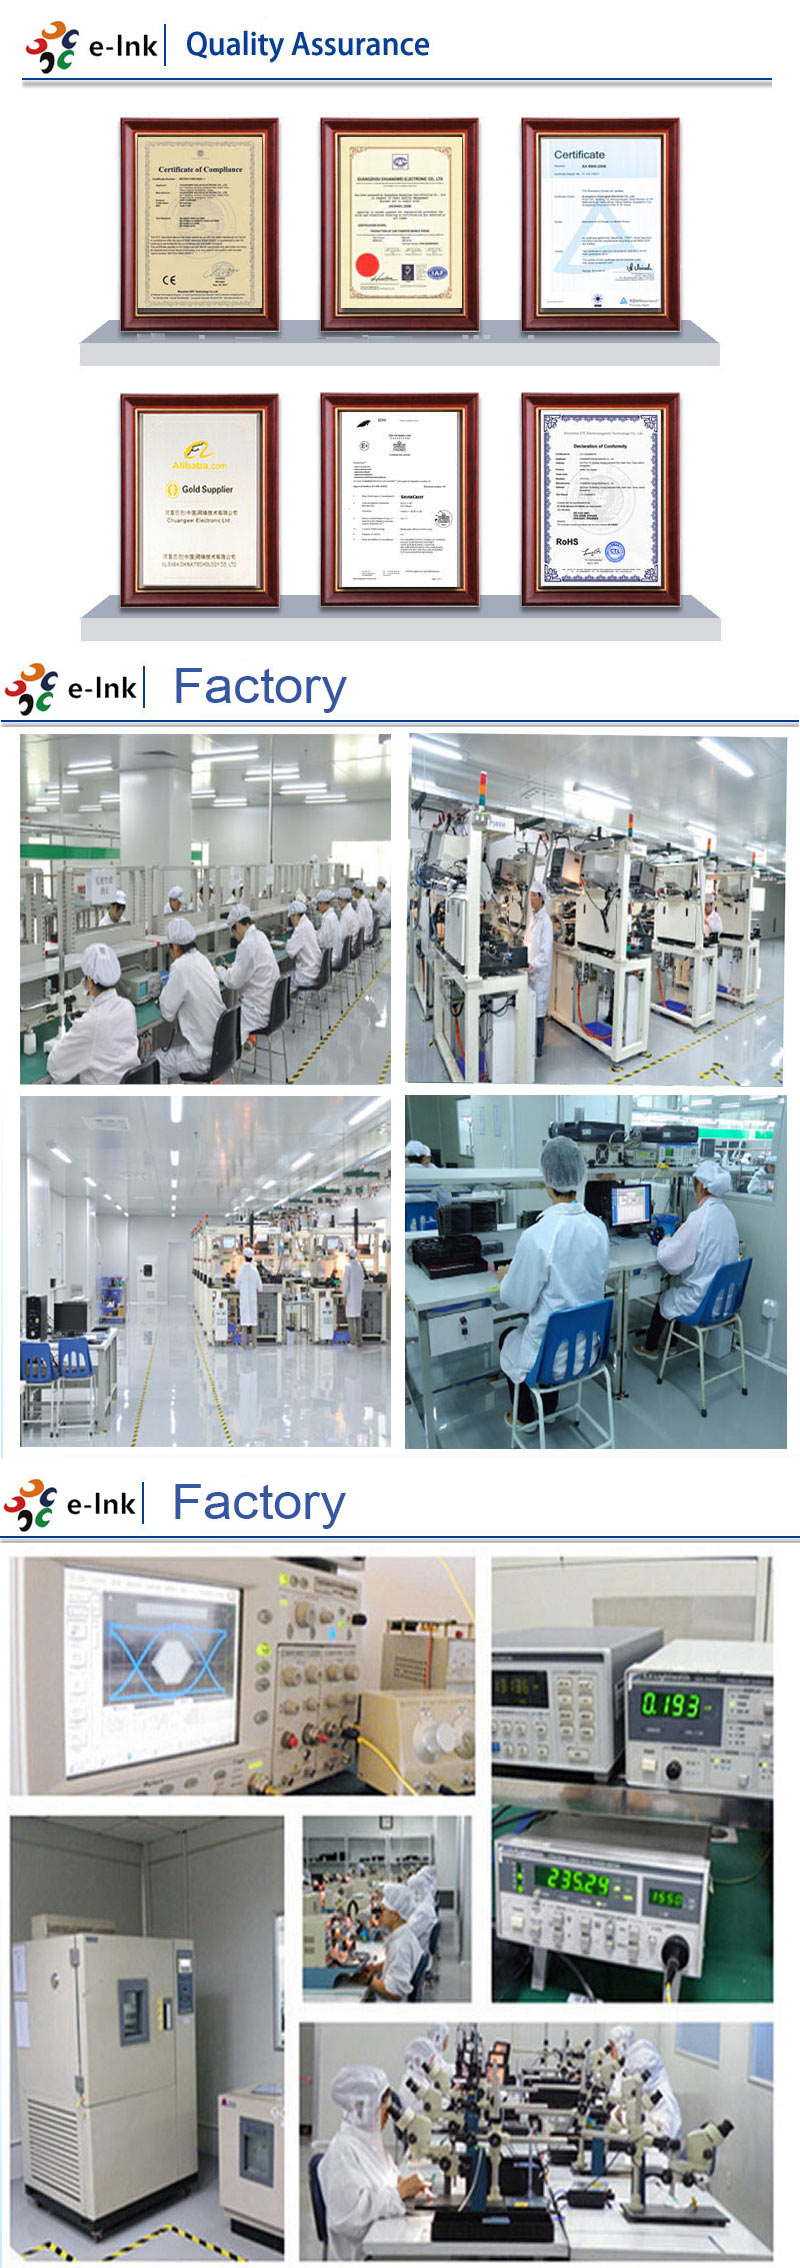 E-link Factory